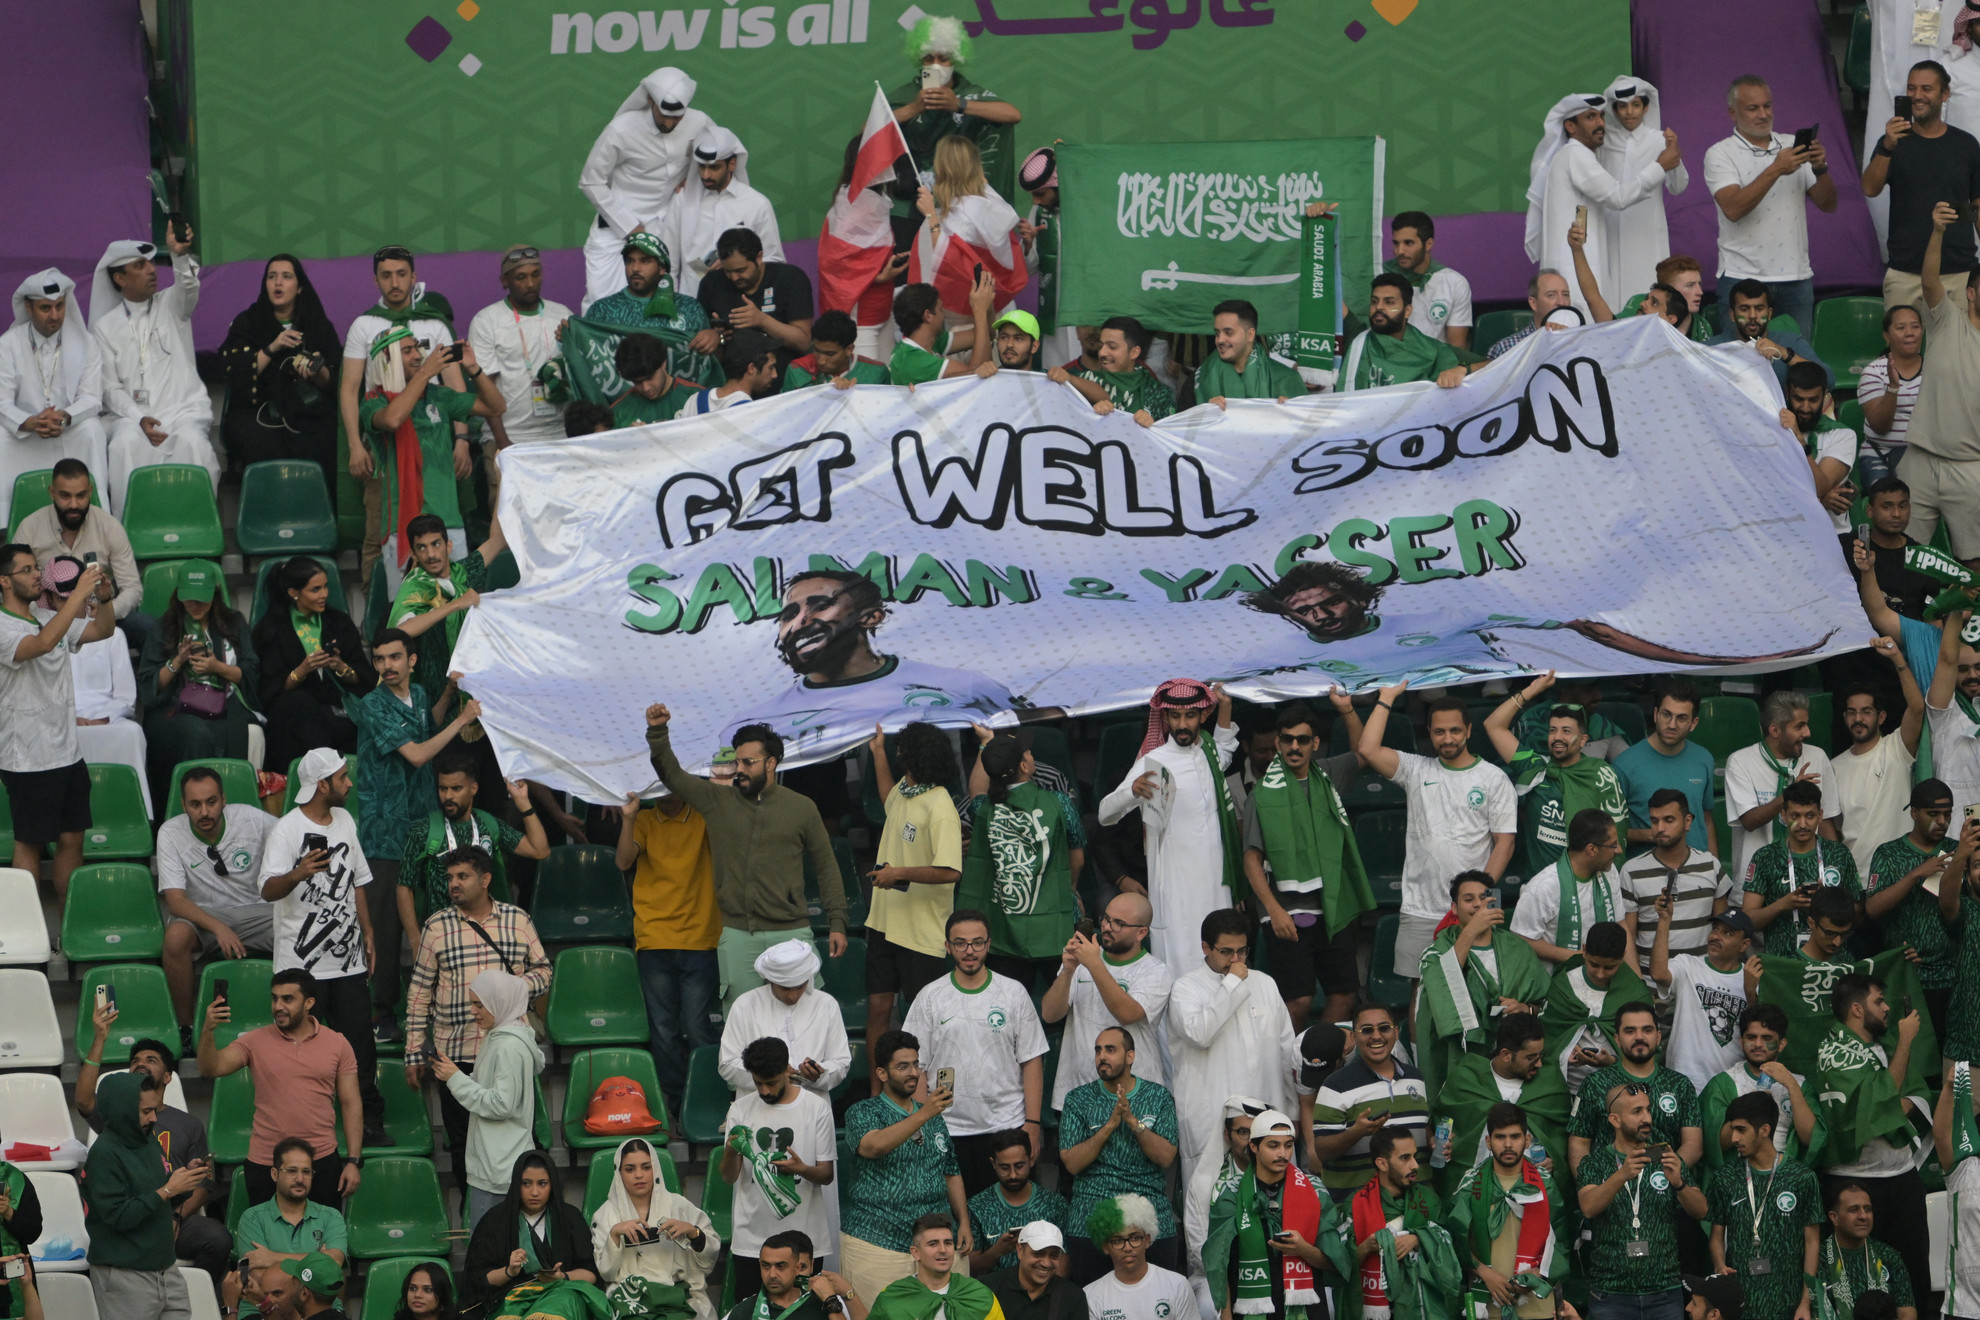 Angolul üzentek a szurkolók a sérült szaúdi játékosoknak – értse a nagyvilág